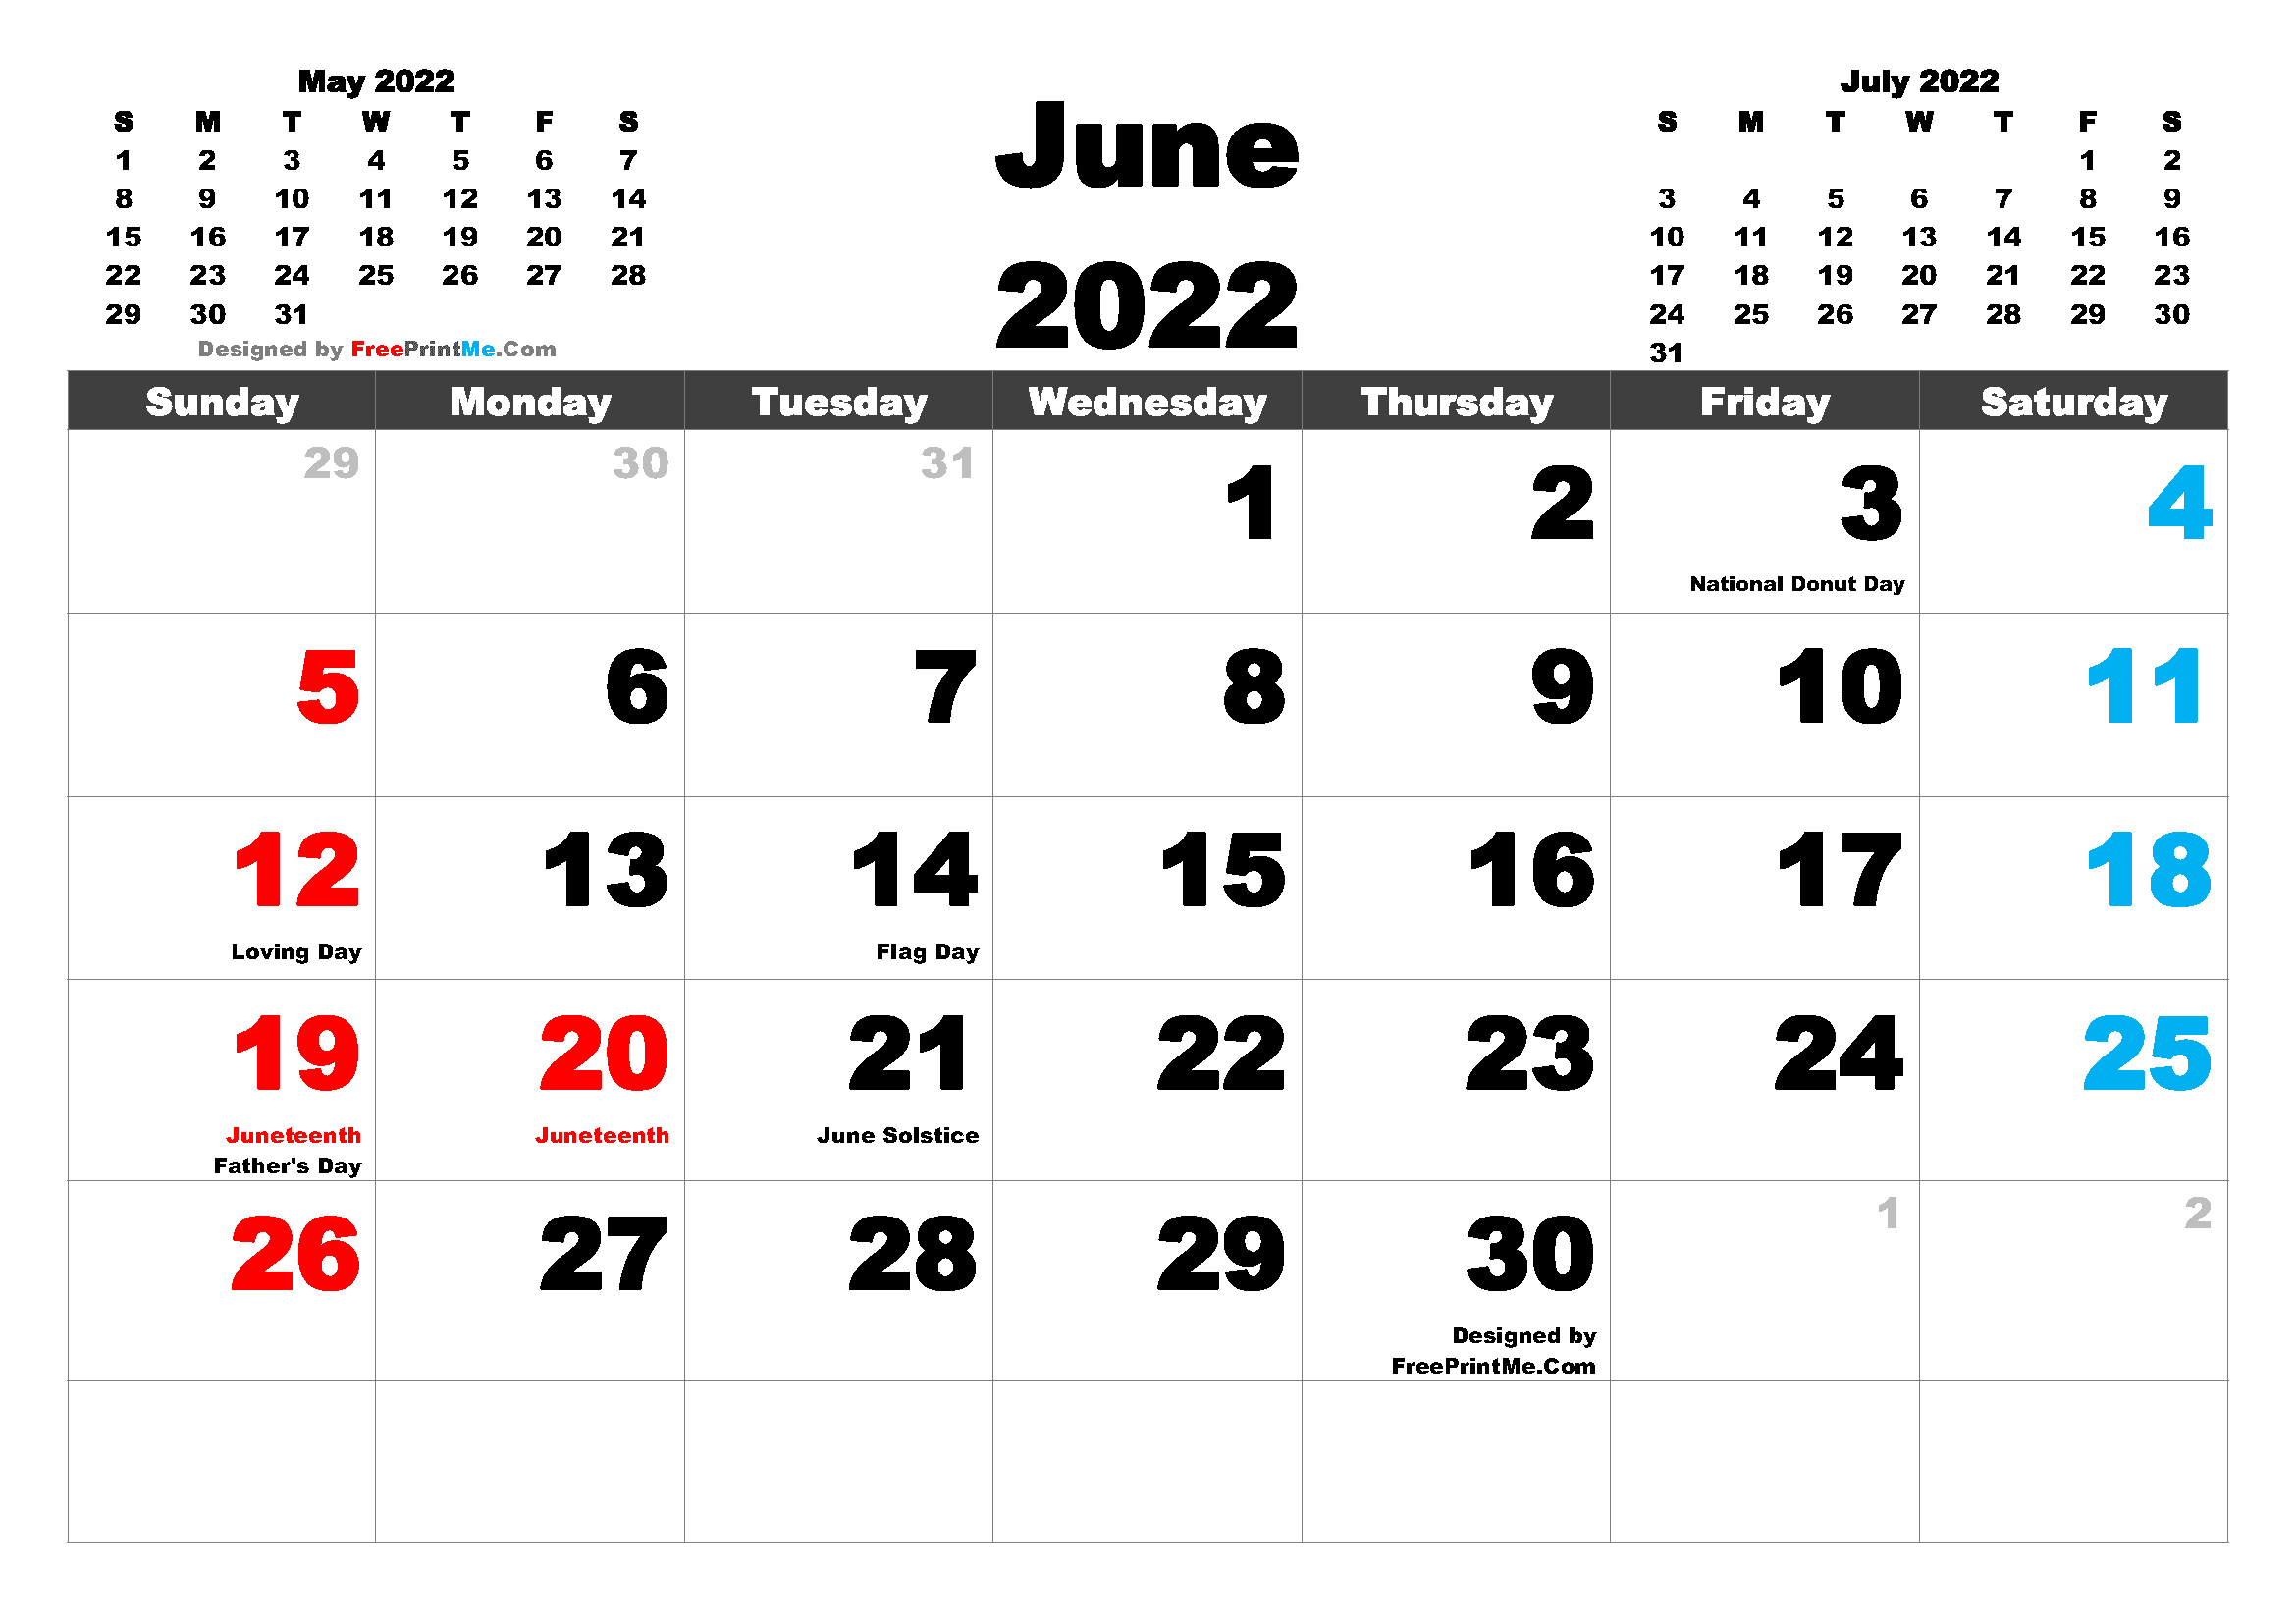 Free Printable Calendar June 2022 Free Printable June 2022 Calendar Pdf And Image